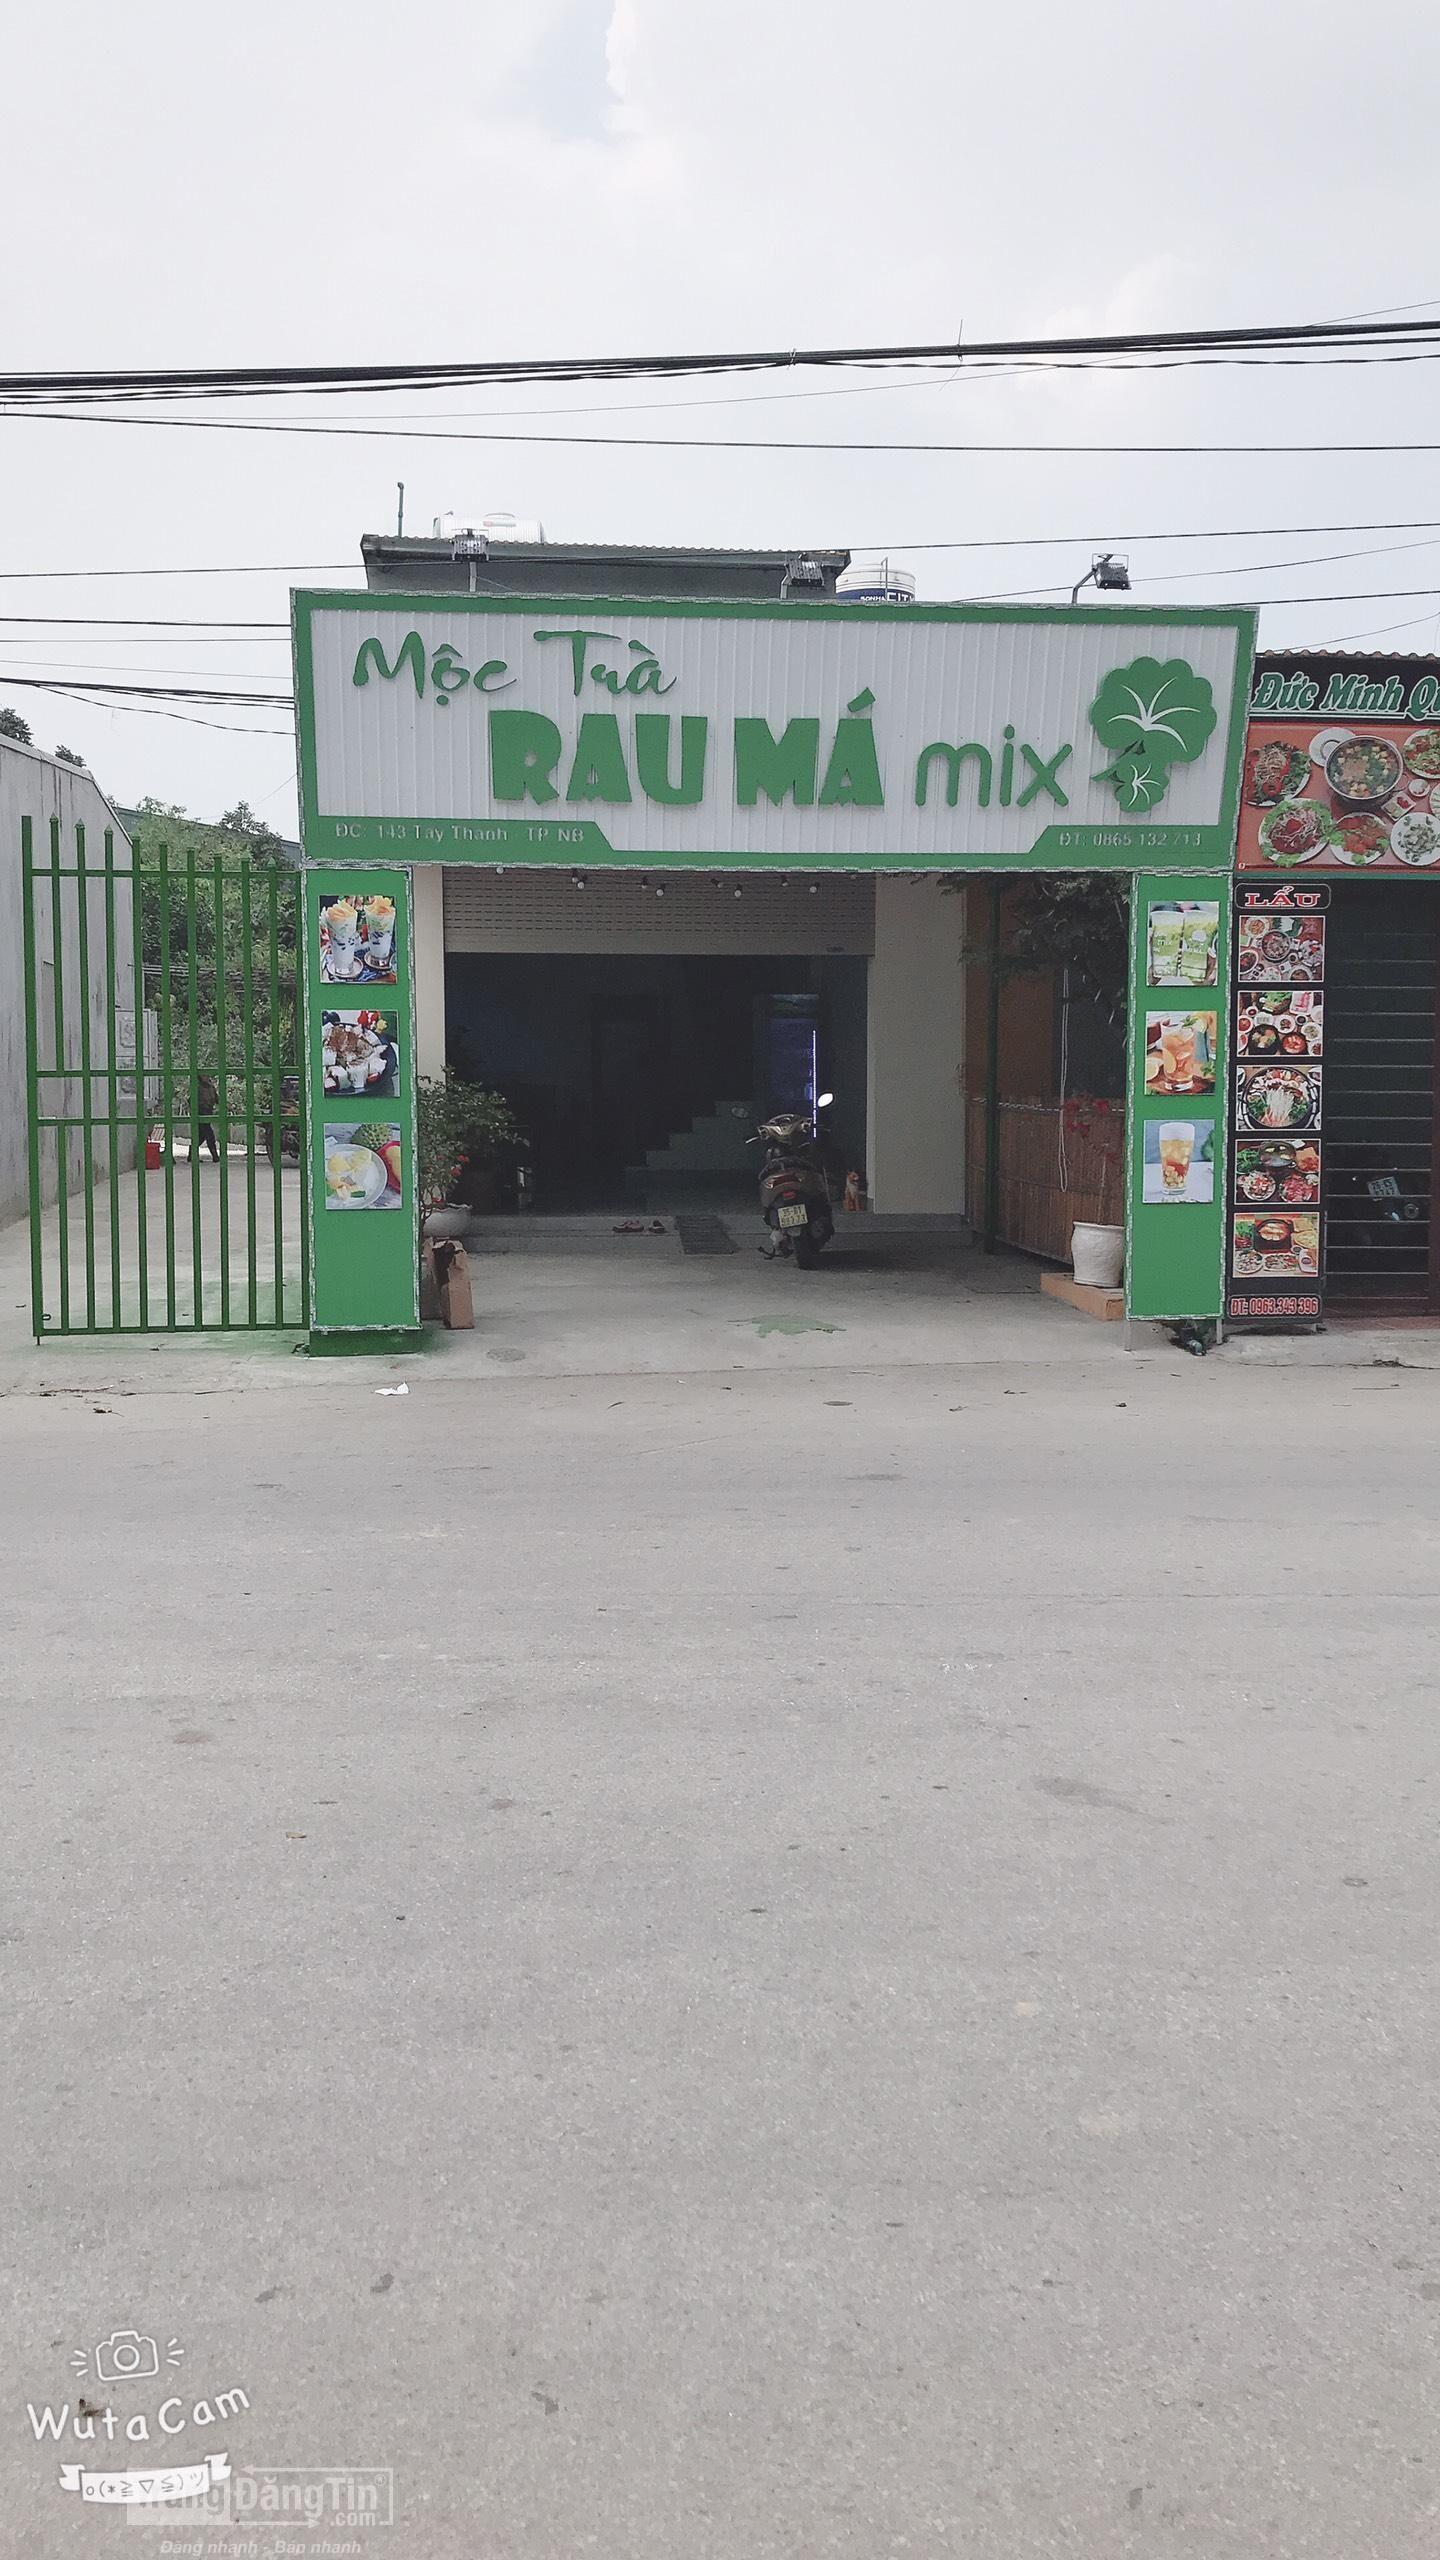 Bán máy tính tiền cho cửa hàng Mộc trà rau má mix giá rẻ tại shop Ninh